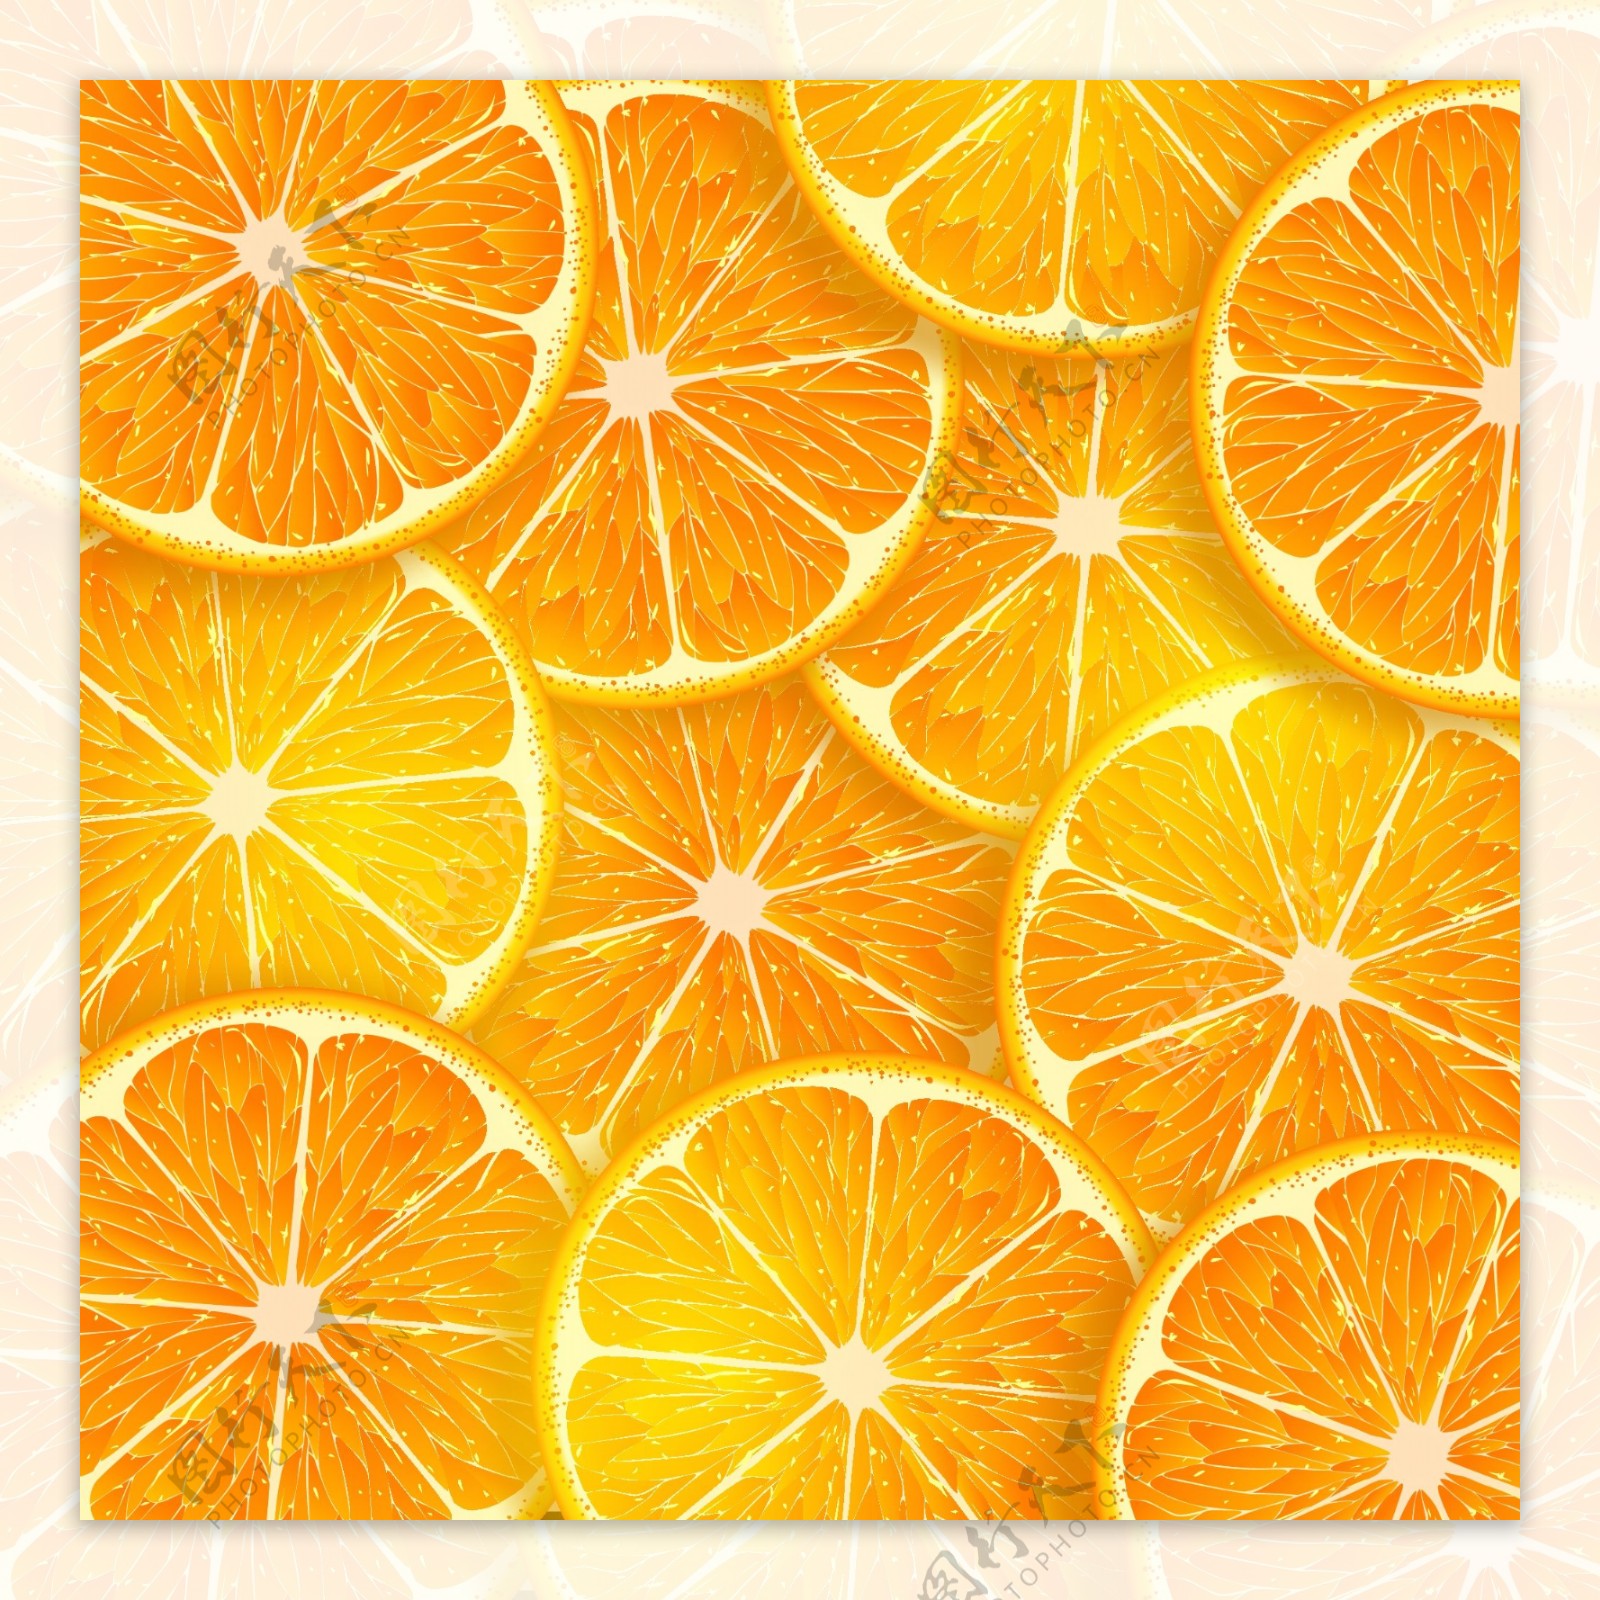 矢量切片橙子图片